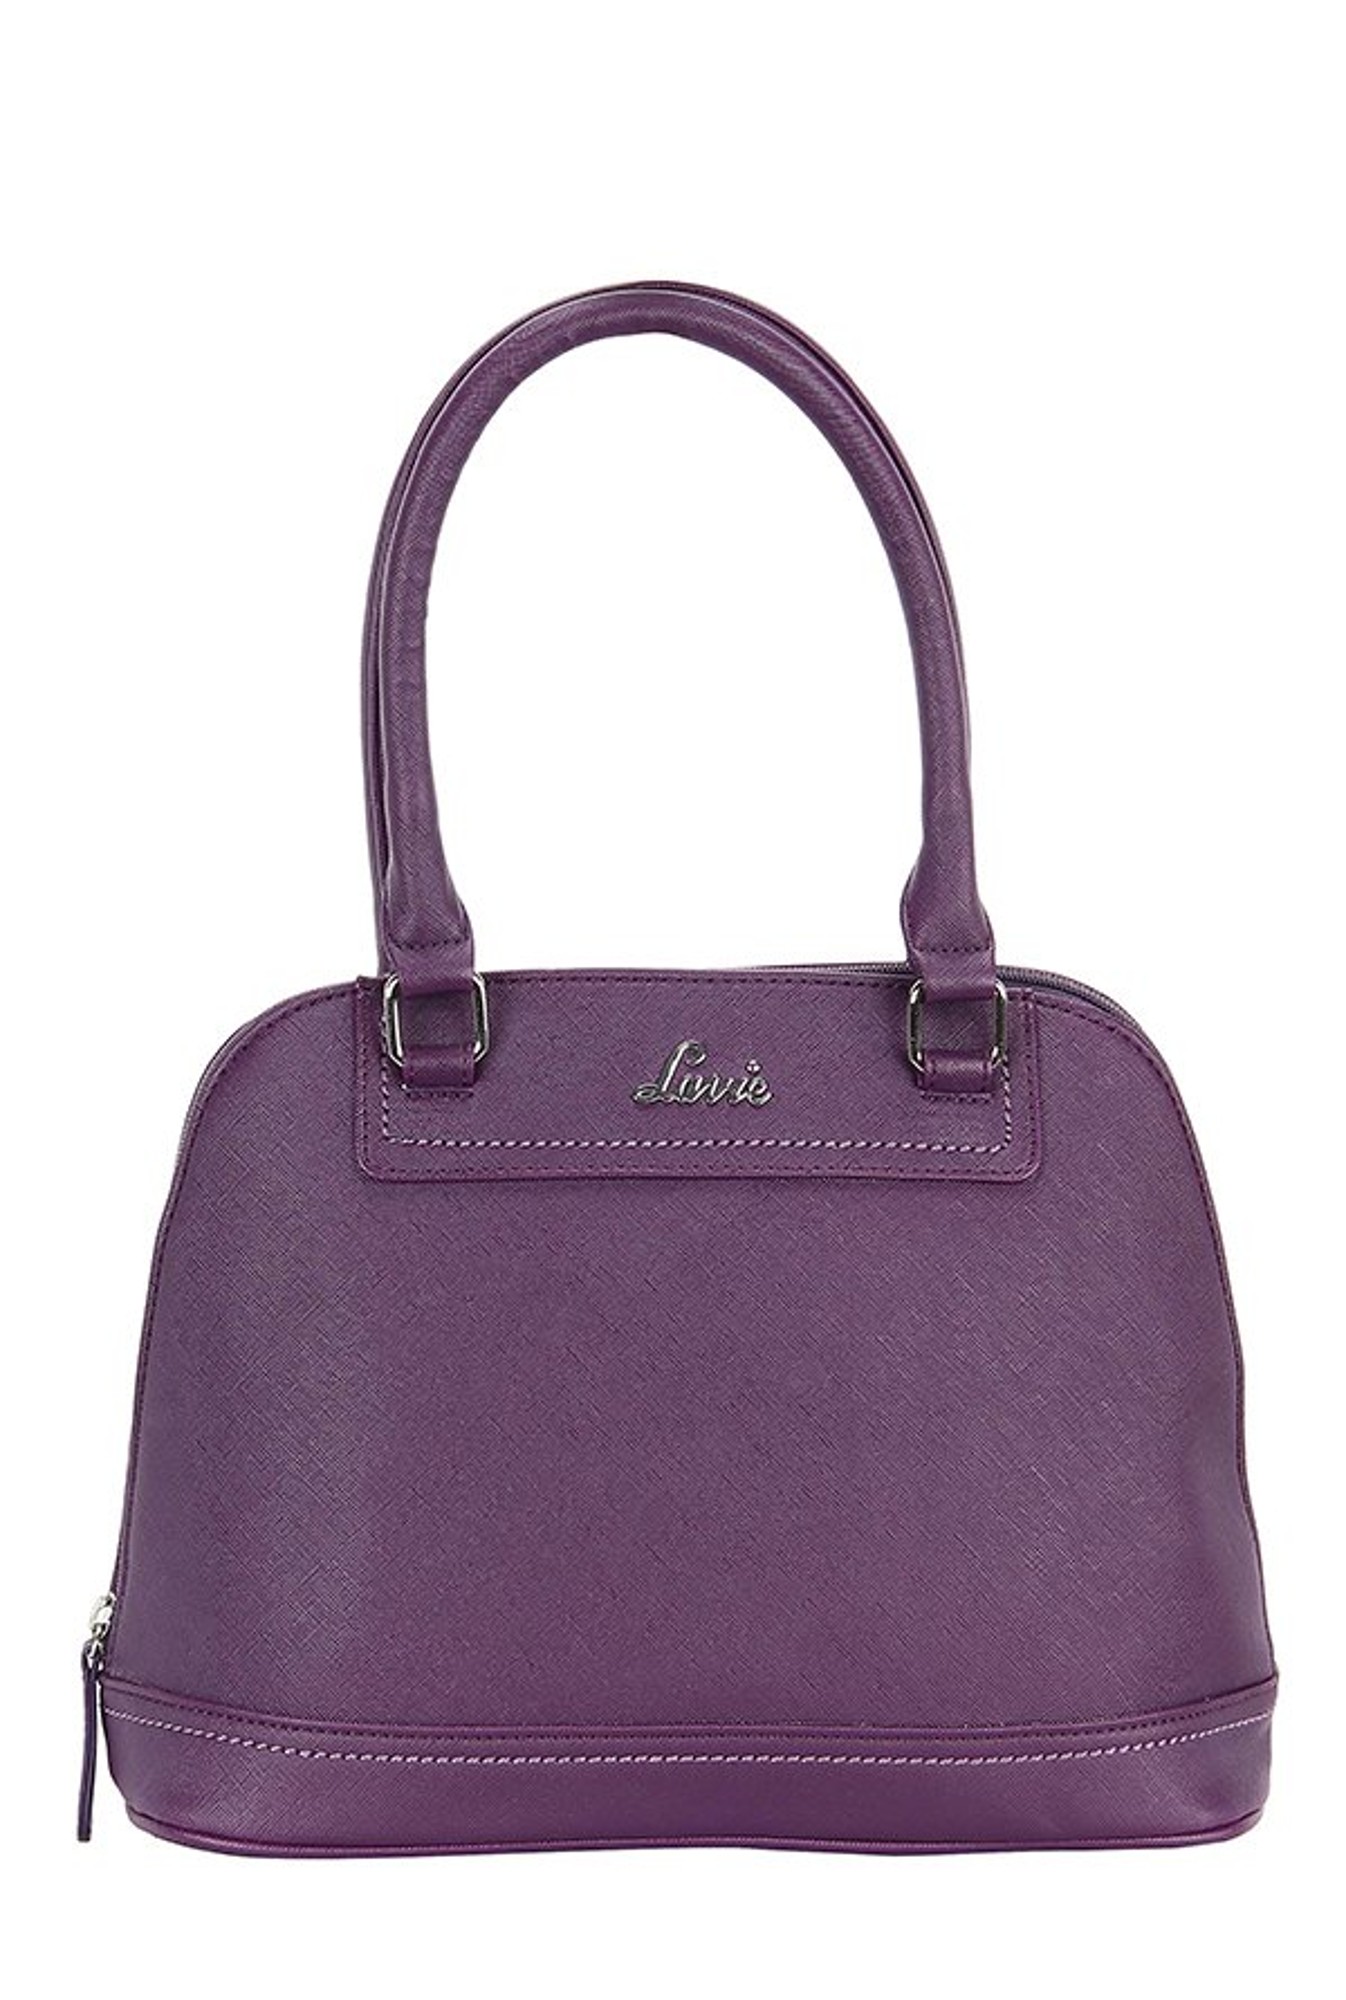 For 1127/-(70% Off) Lavie Cupik 1 Purple Solid Handbag - Tatacliq.com at TATA CLiQ